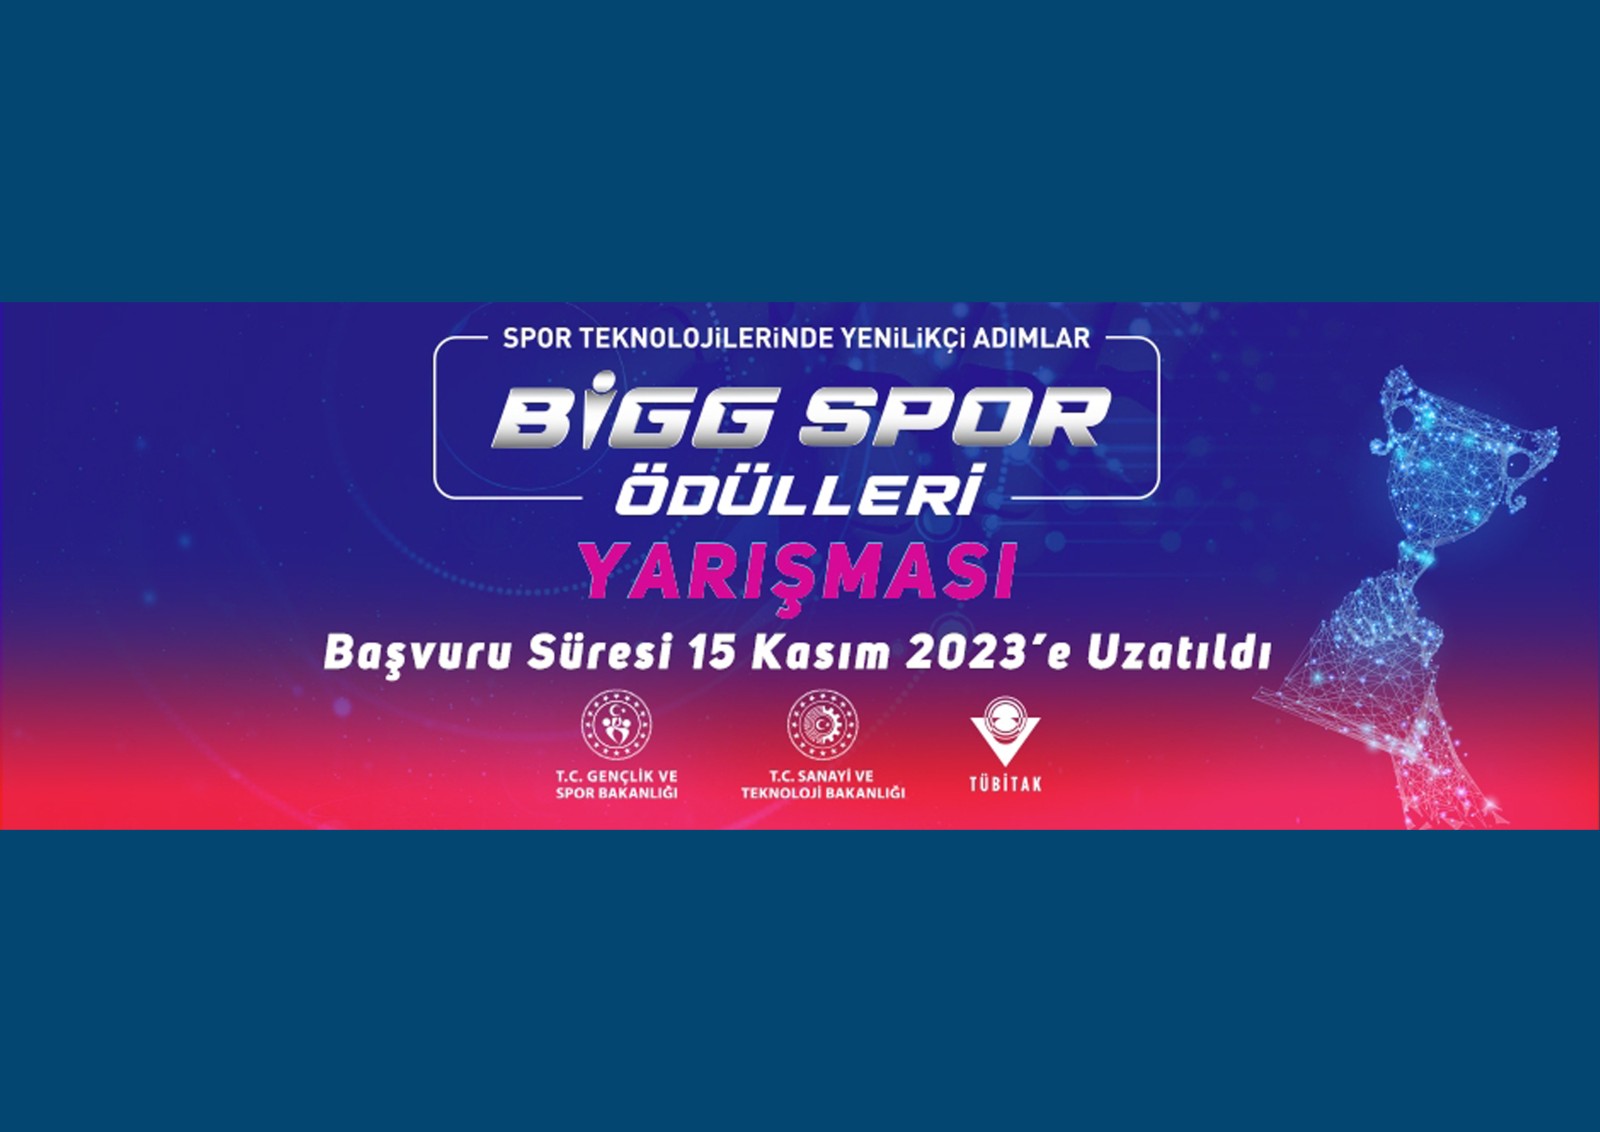 “BİGG SPOR Ödülleri” Yarışmasının Başvuru Süresi 15 Kasım 2023’e Uzatıldı